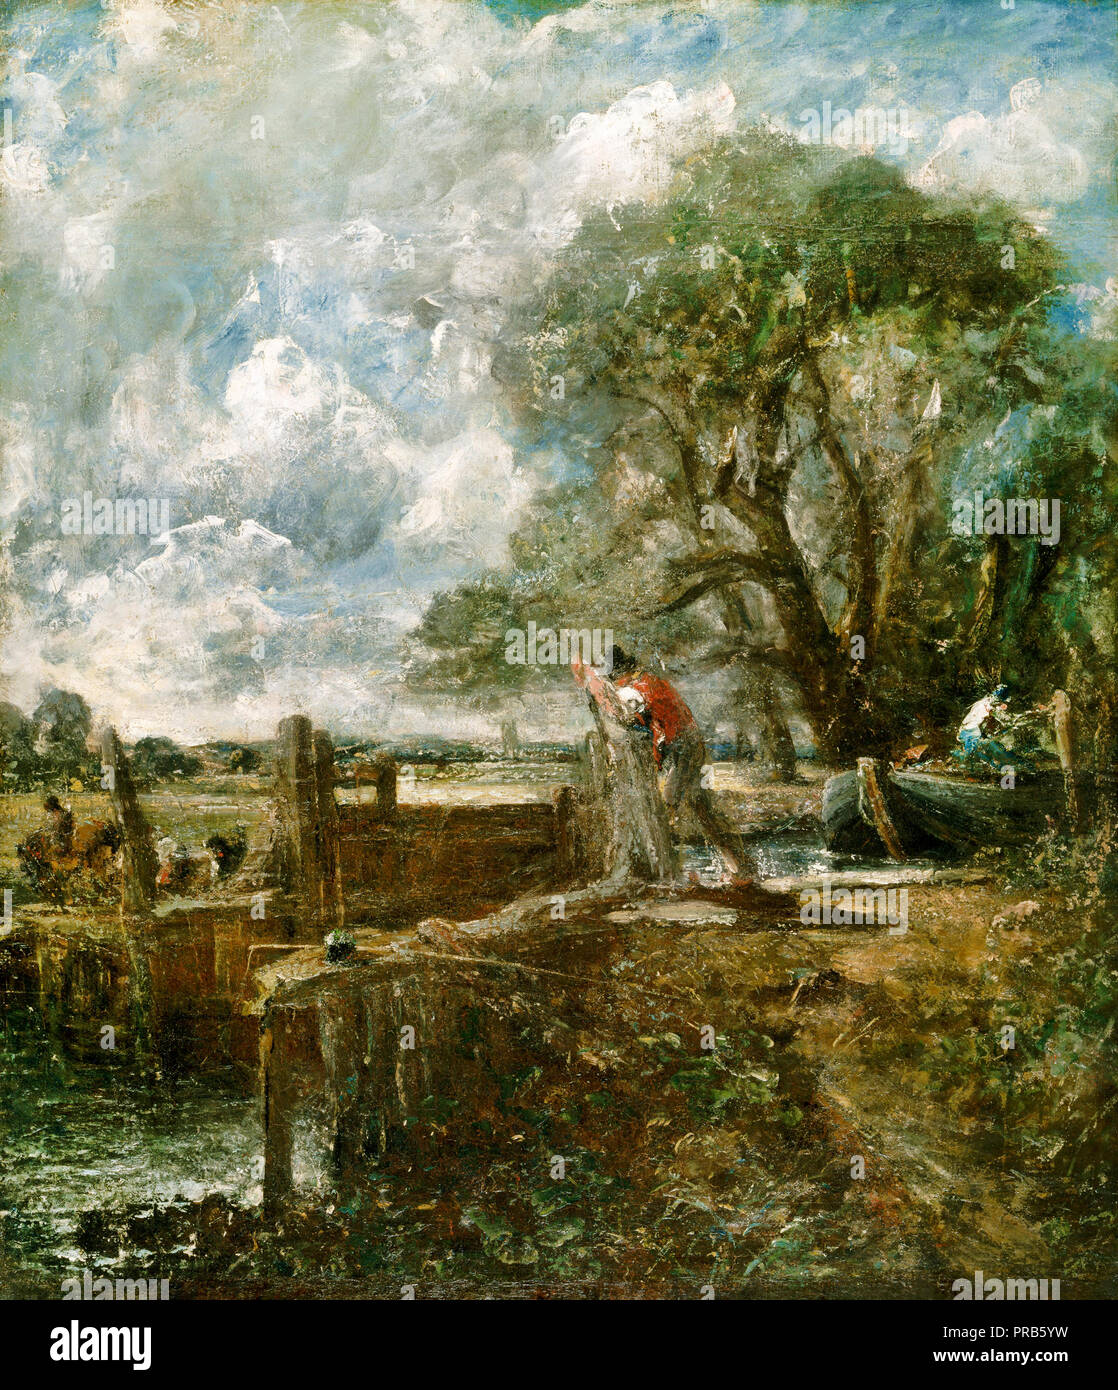 John Constable, Boceto para 'un barco pasando un bloqueo'. Circa 1822-1824 Óleo sobre lienzo, Museo de Arte de Filadelfia, Pensilvania, Estados Unidos. Foto de stock